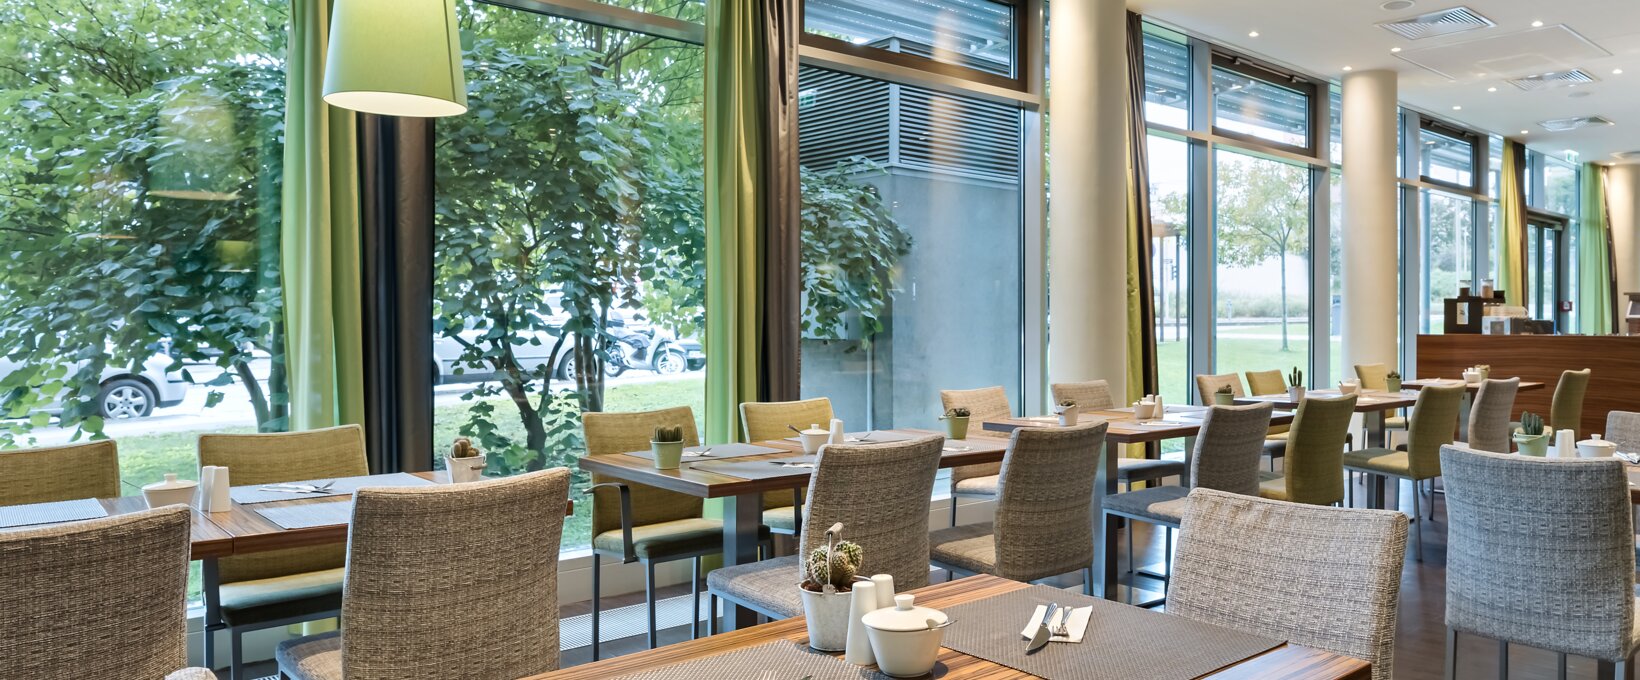 Frühstücksraum mit gedeckten Tischen | Hotel Doppio in Wien